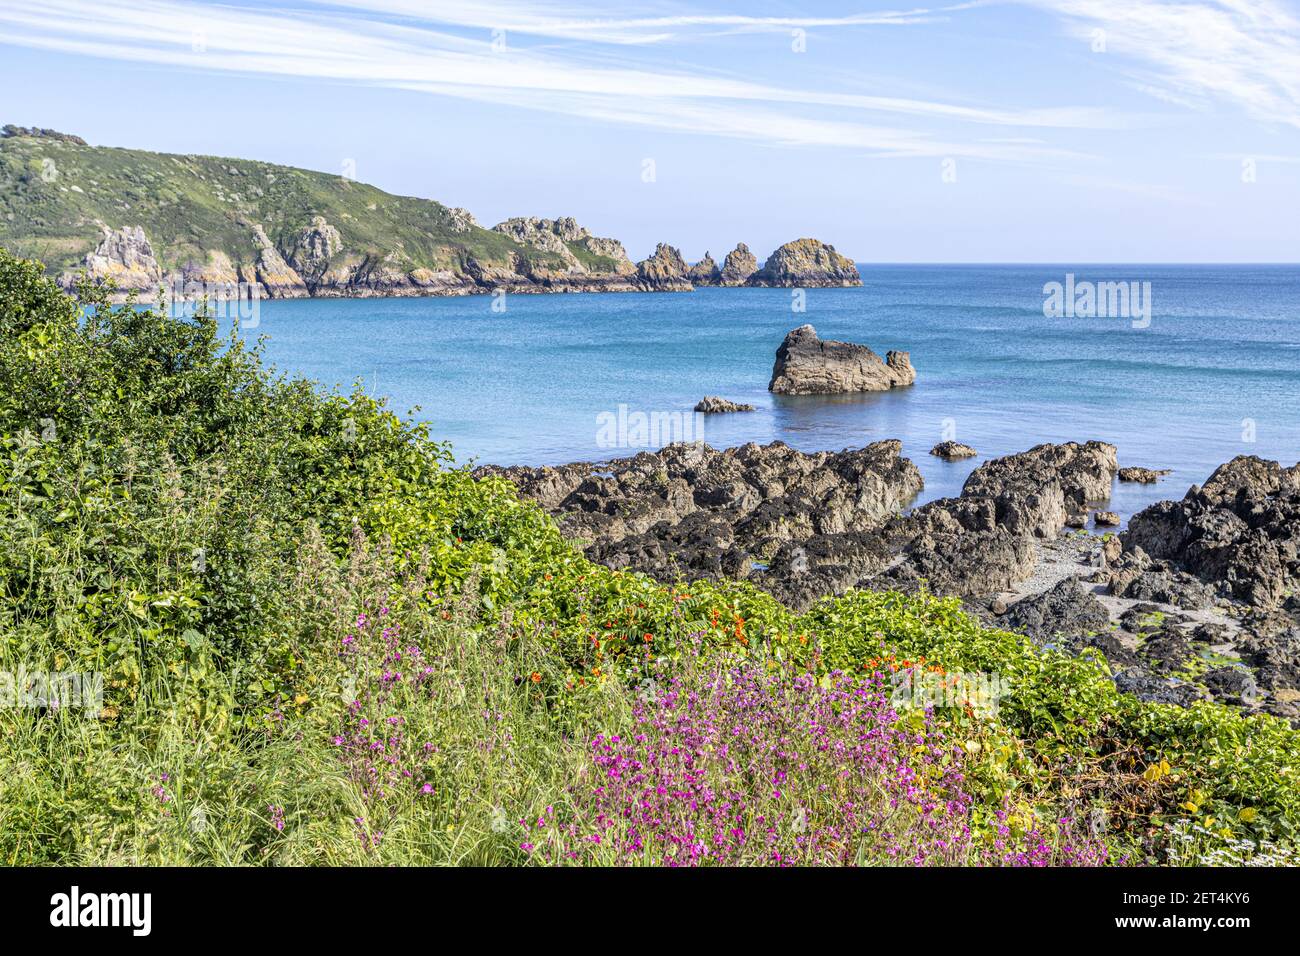 La bella costa sud aspra di Guernsey - Wildflowers accanto al percorso costiero intorno Moulin Huet Bay, Guernsey, Isole del canale Regno Unito Foto Stock